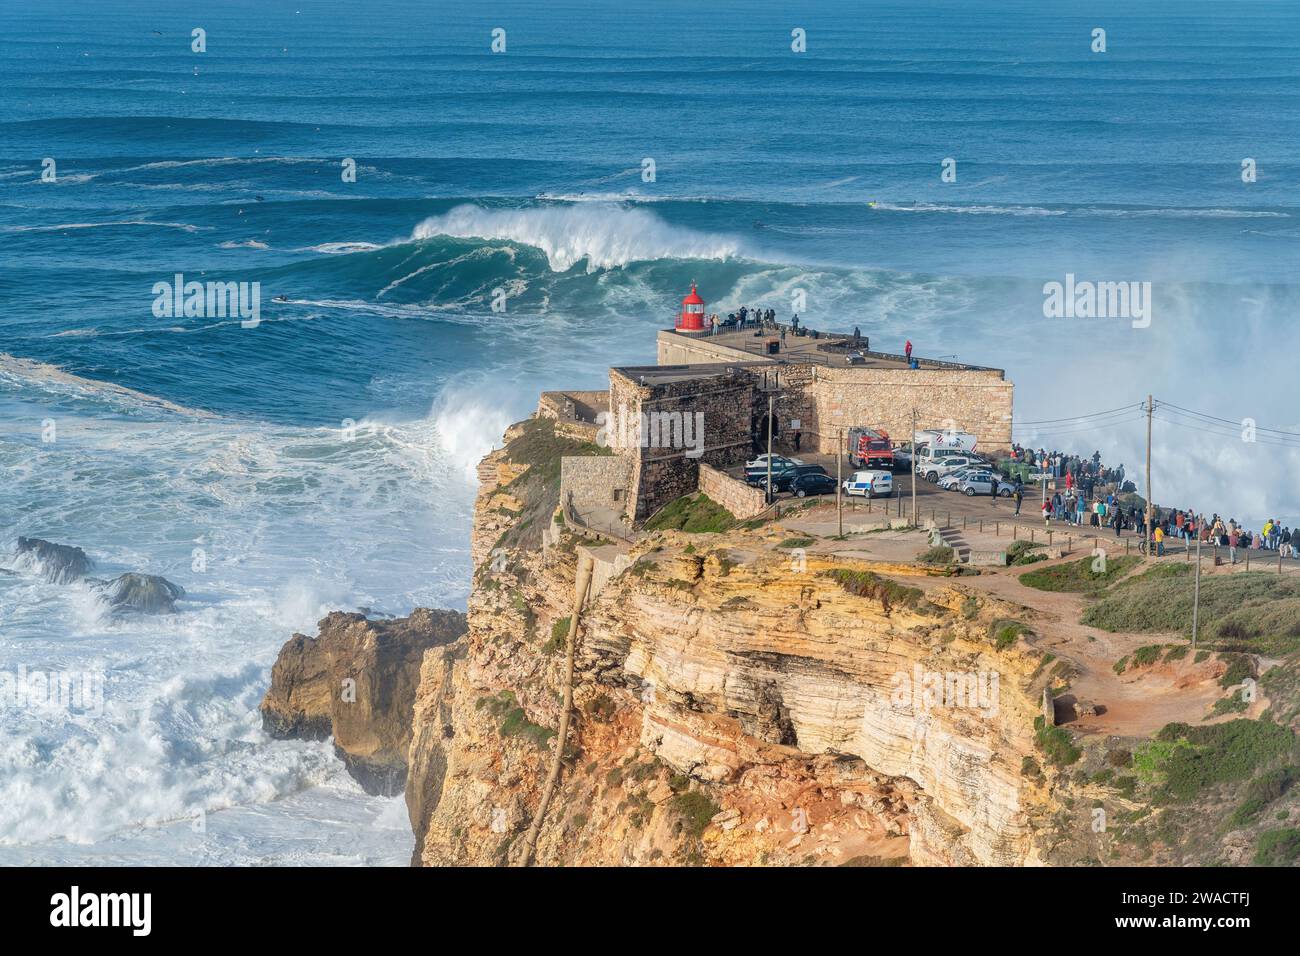 Wellen brechen in der Nähe des Fort of Sao Miguel Arcanjo Leuchtturms in Nazare, Portugal, das bei Surfern für die größten Wellen der Welt bekannt ist. Stockfoto